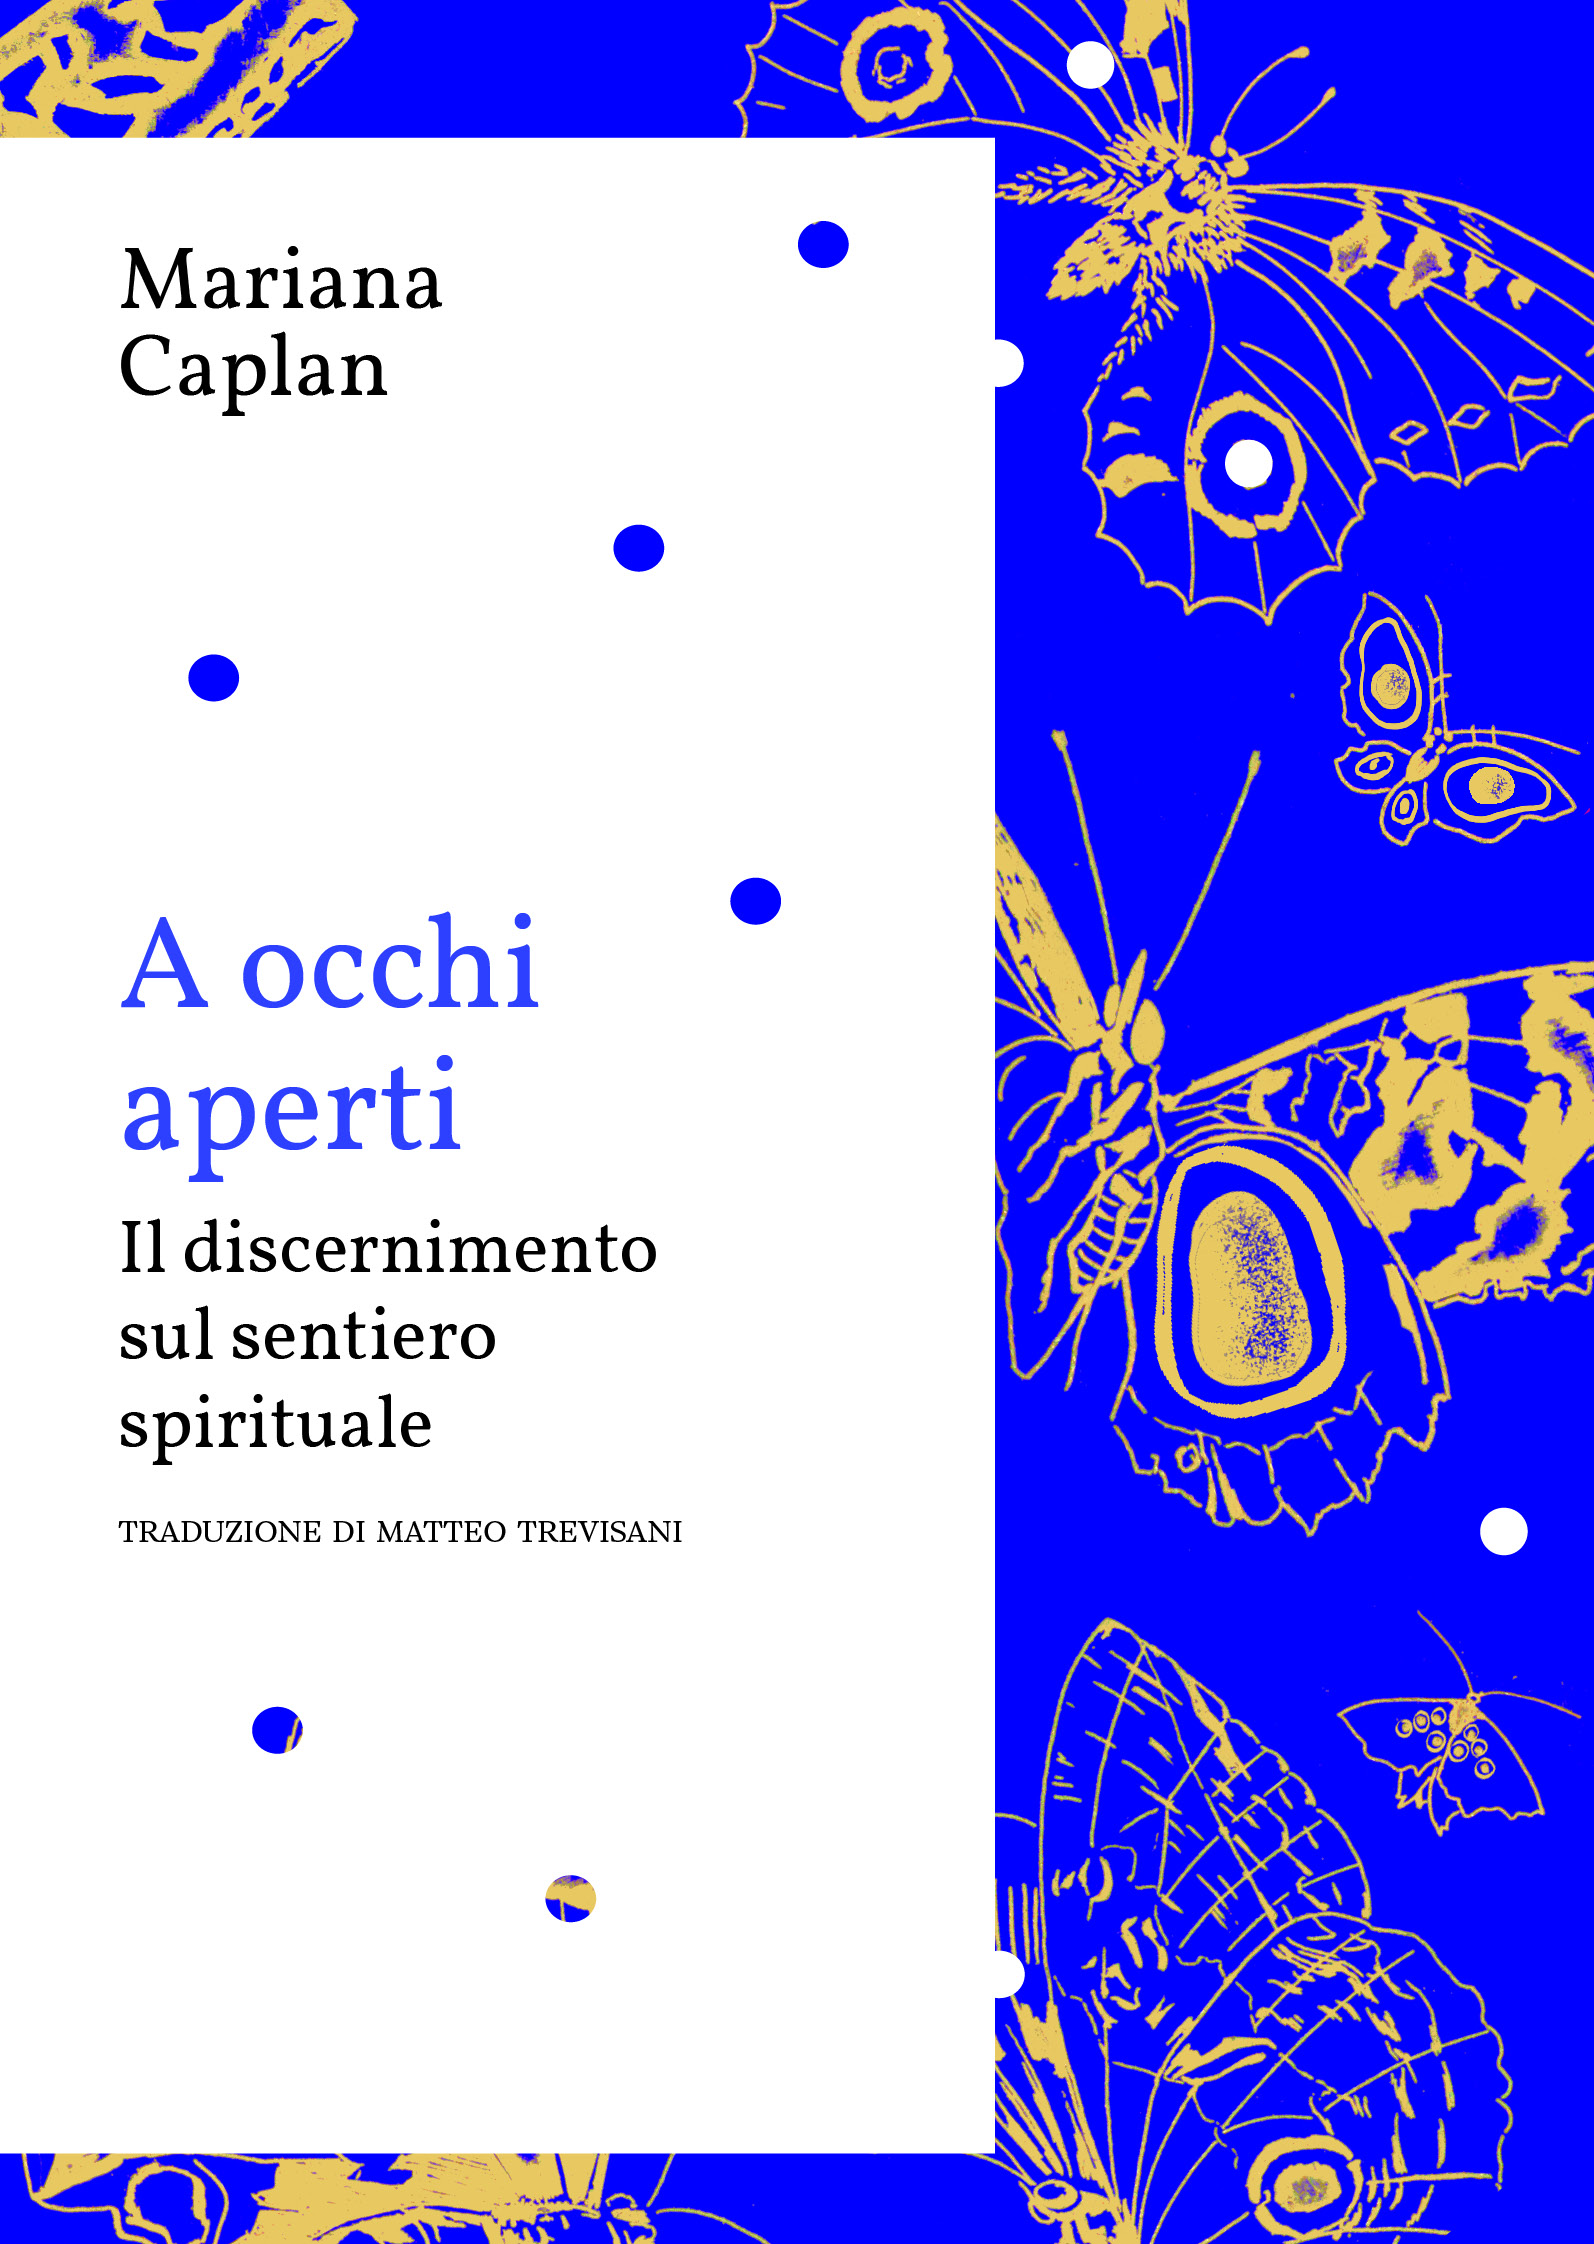 COVER A Occhi Aperti Mariana Caplan